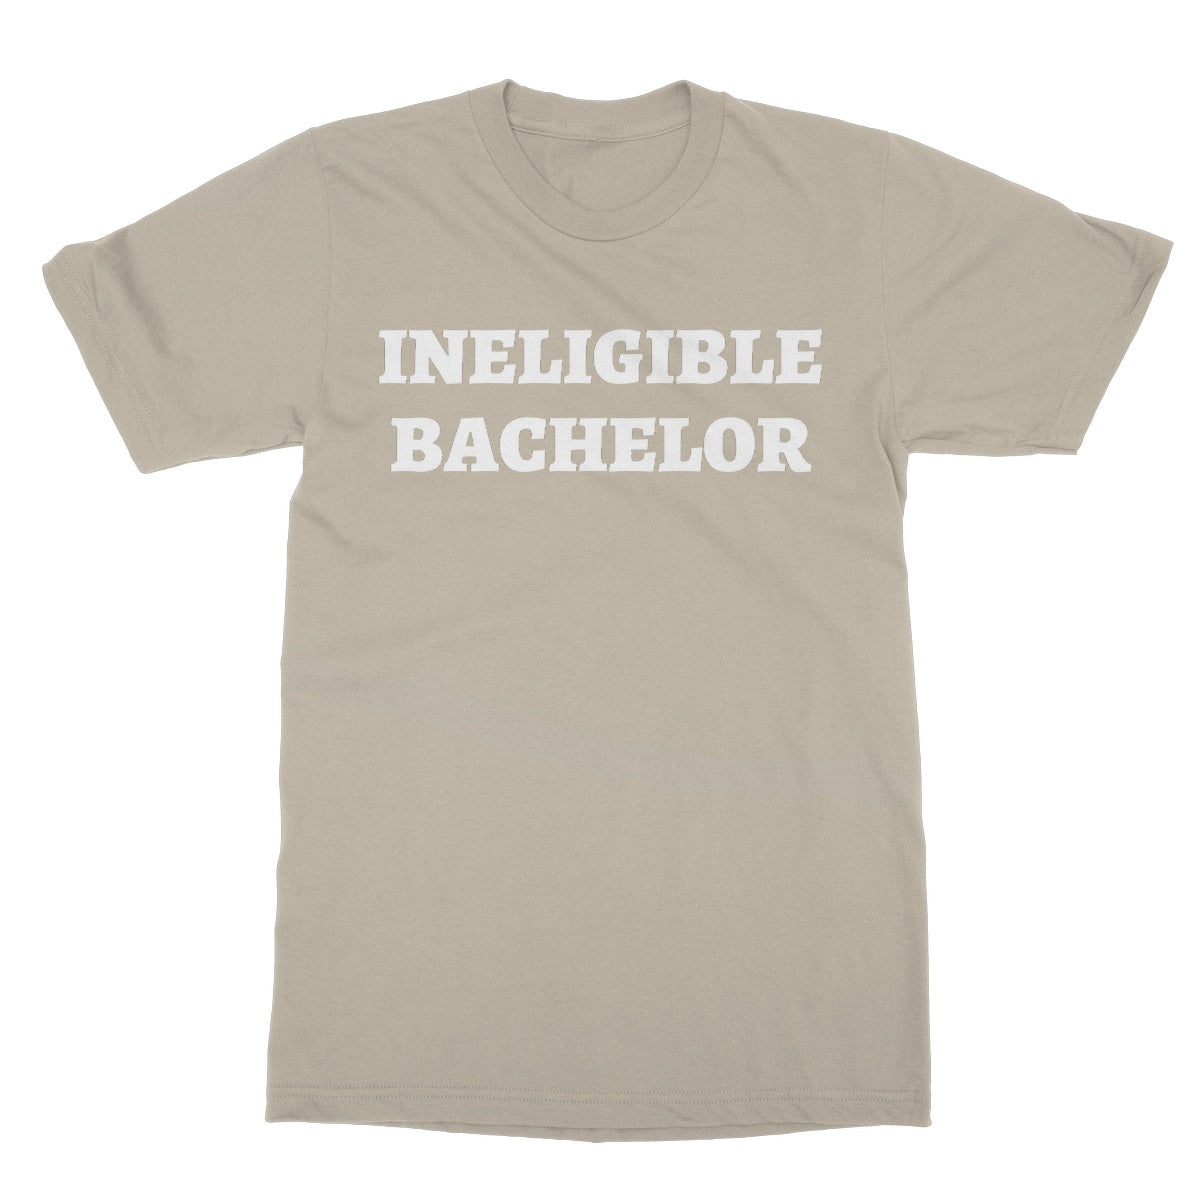 ineligible bachelor t shirt beige